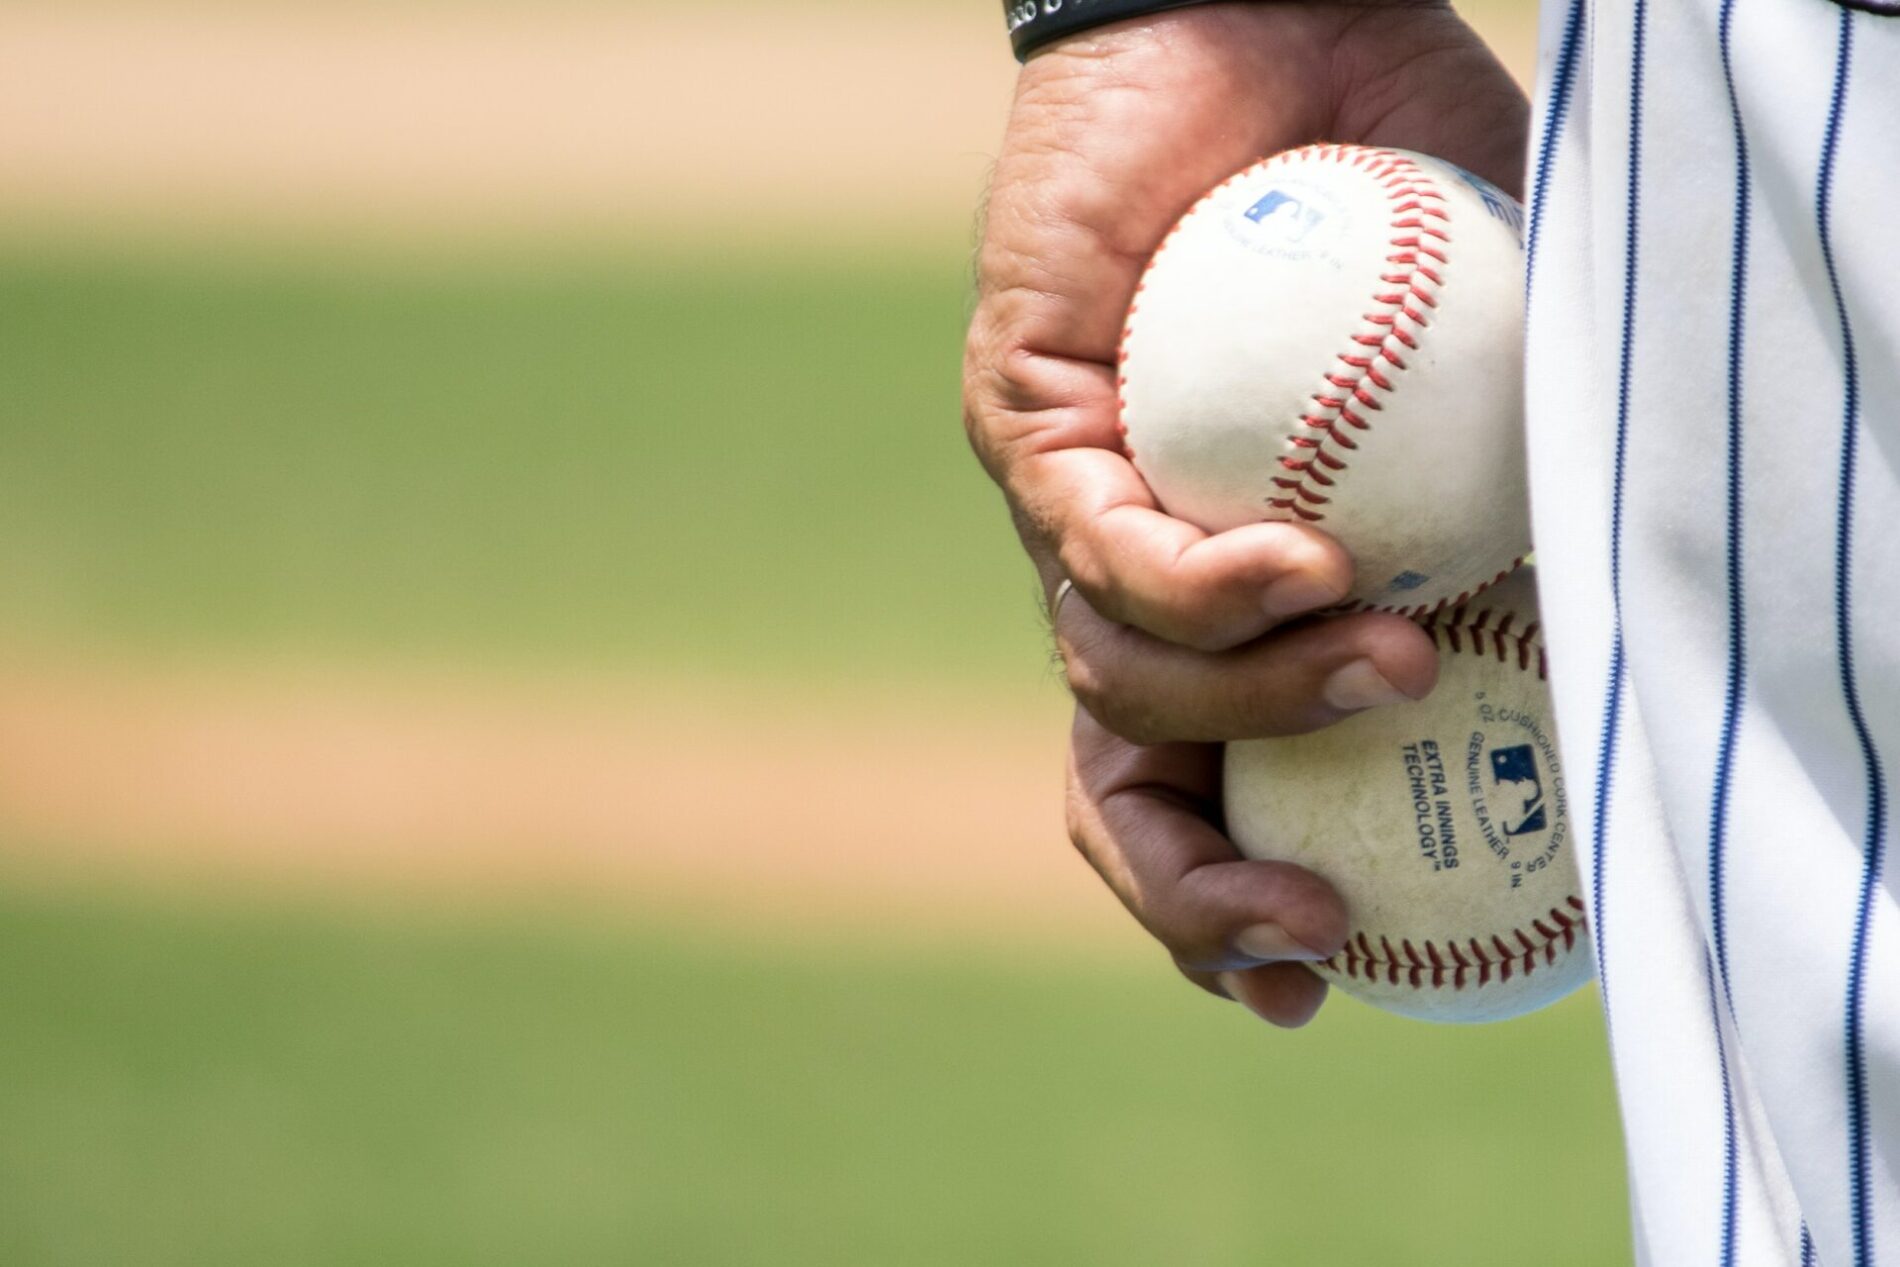 Play Ball!: A look at the 2023 MLB Season